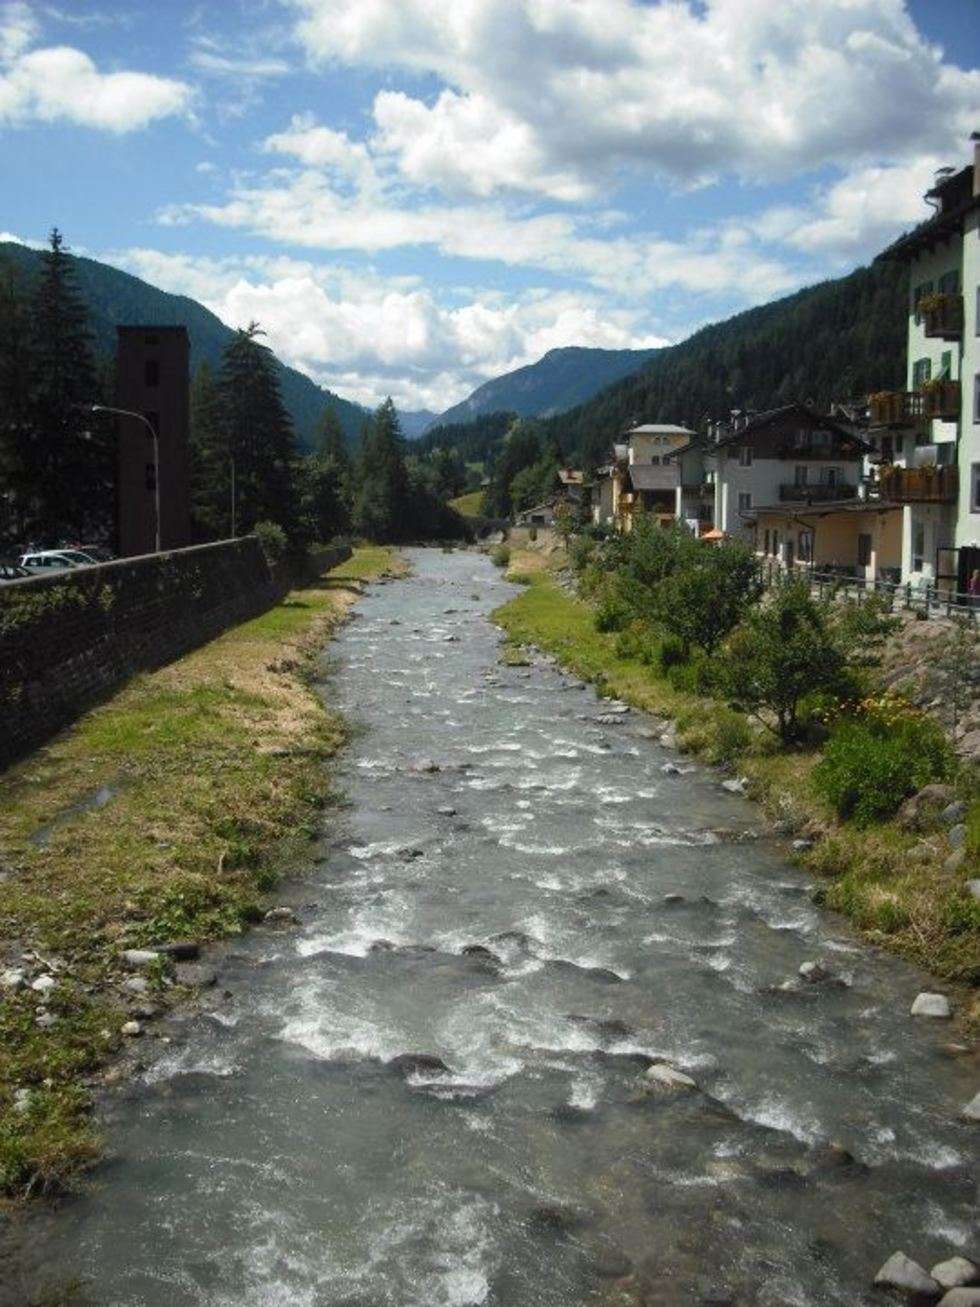  Zdjęcia wykonane zostały osobiście podczas urlopu we włoskich Dolomitach-Falcade na przełomie lipca/sierpnia 2011 roku